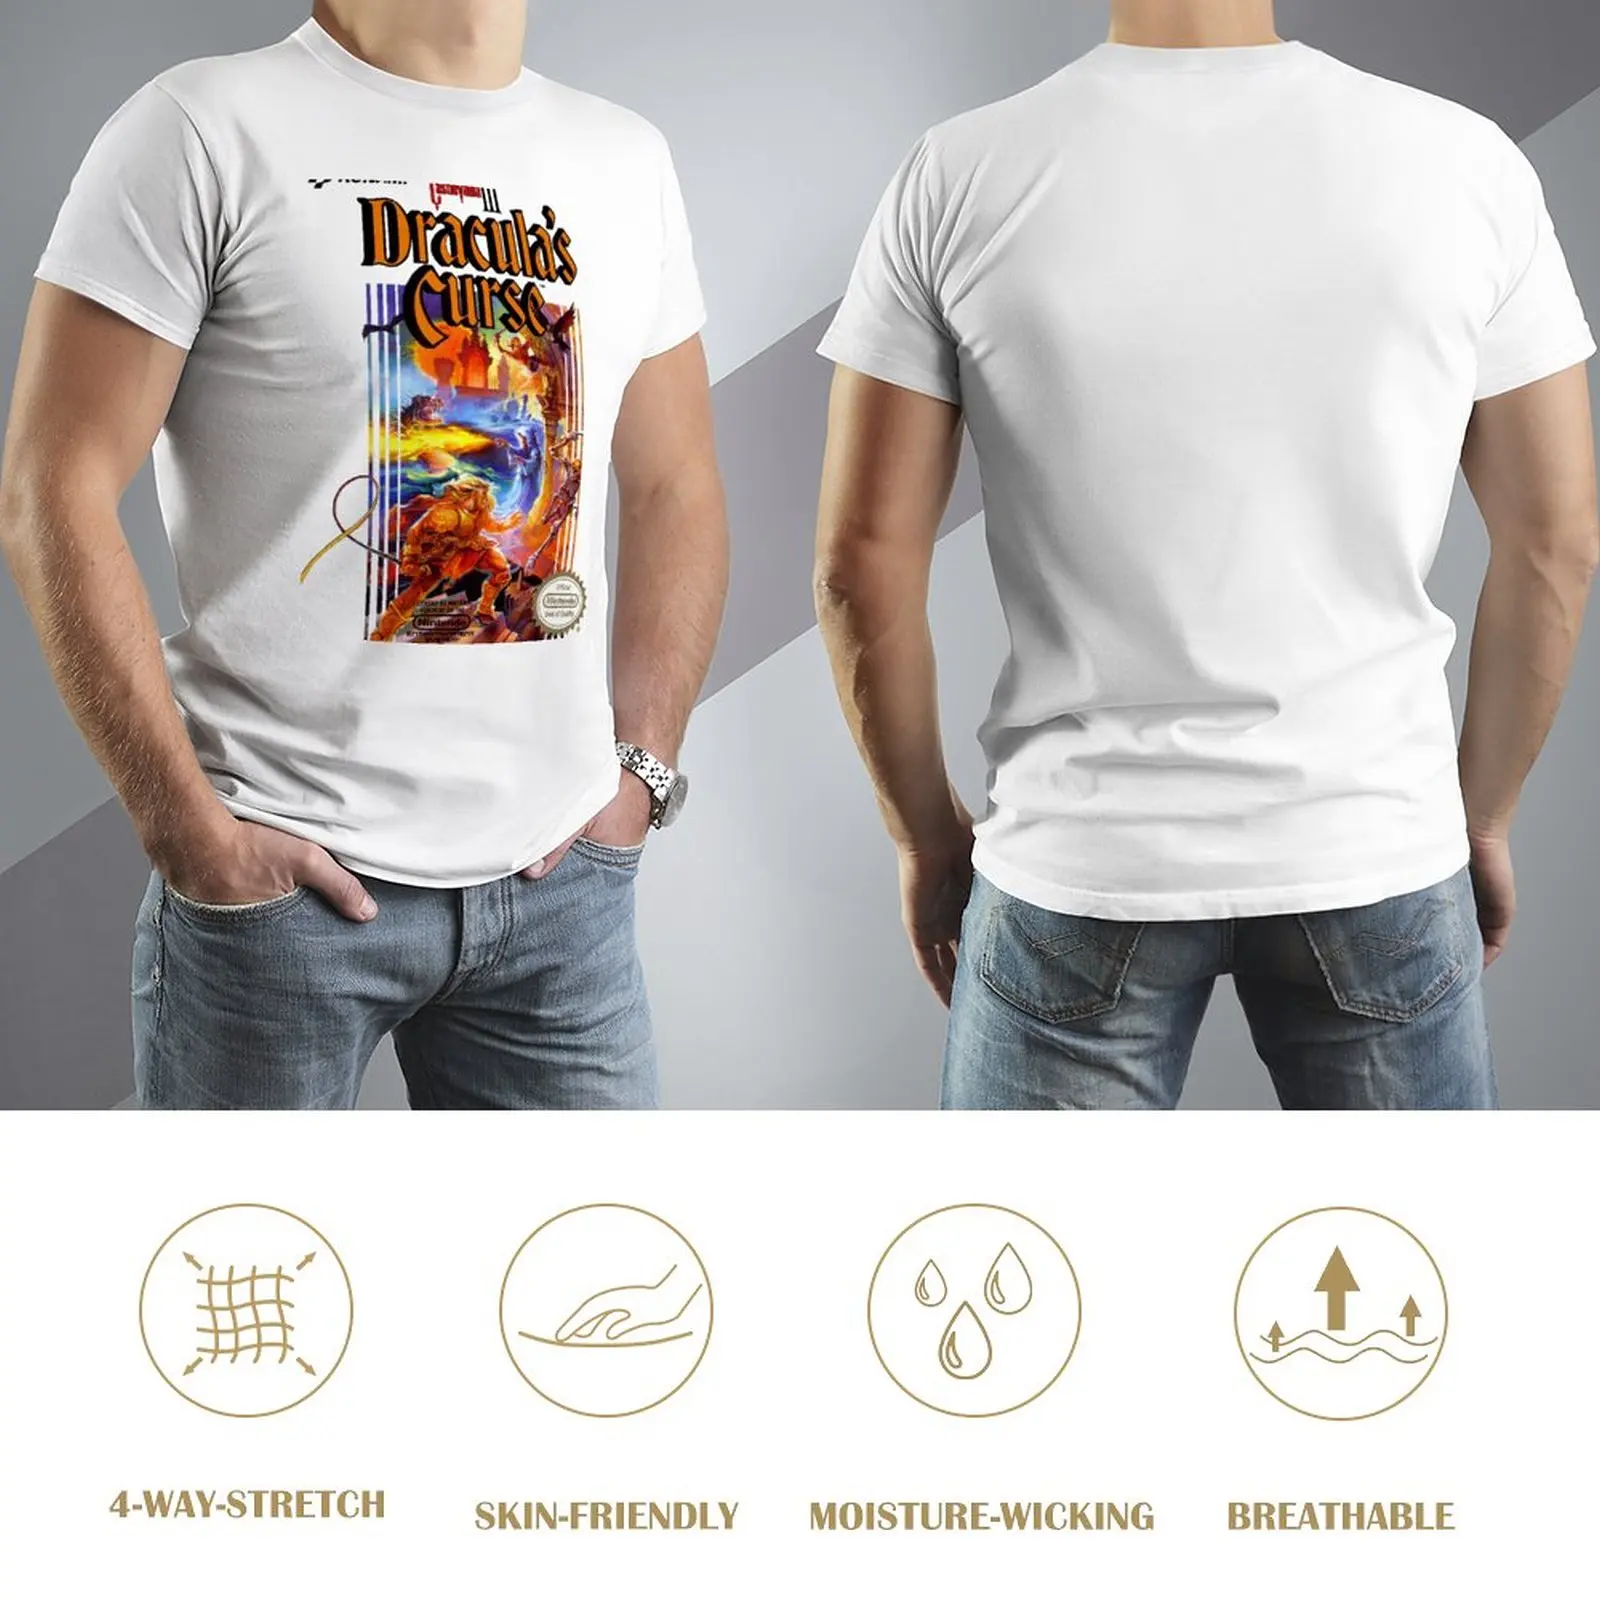 Футболка Castlevania 3, короткая эстетичная одежда, забавная футболка, мужские футболки большого и высокого размера. Изображение 2